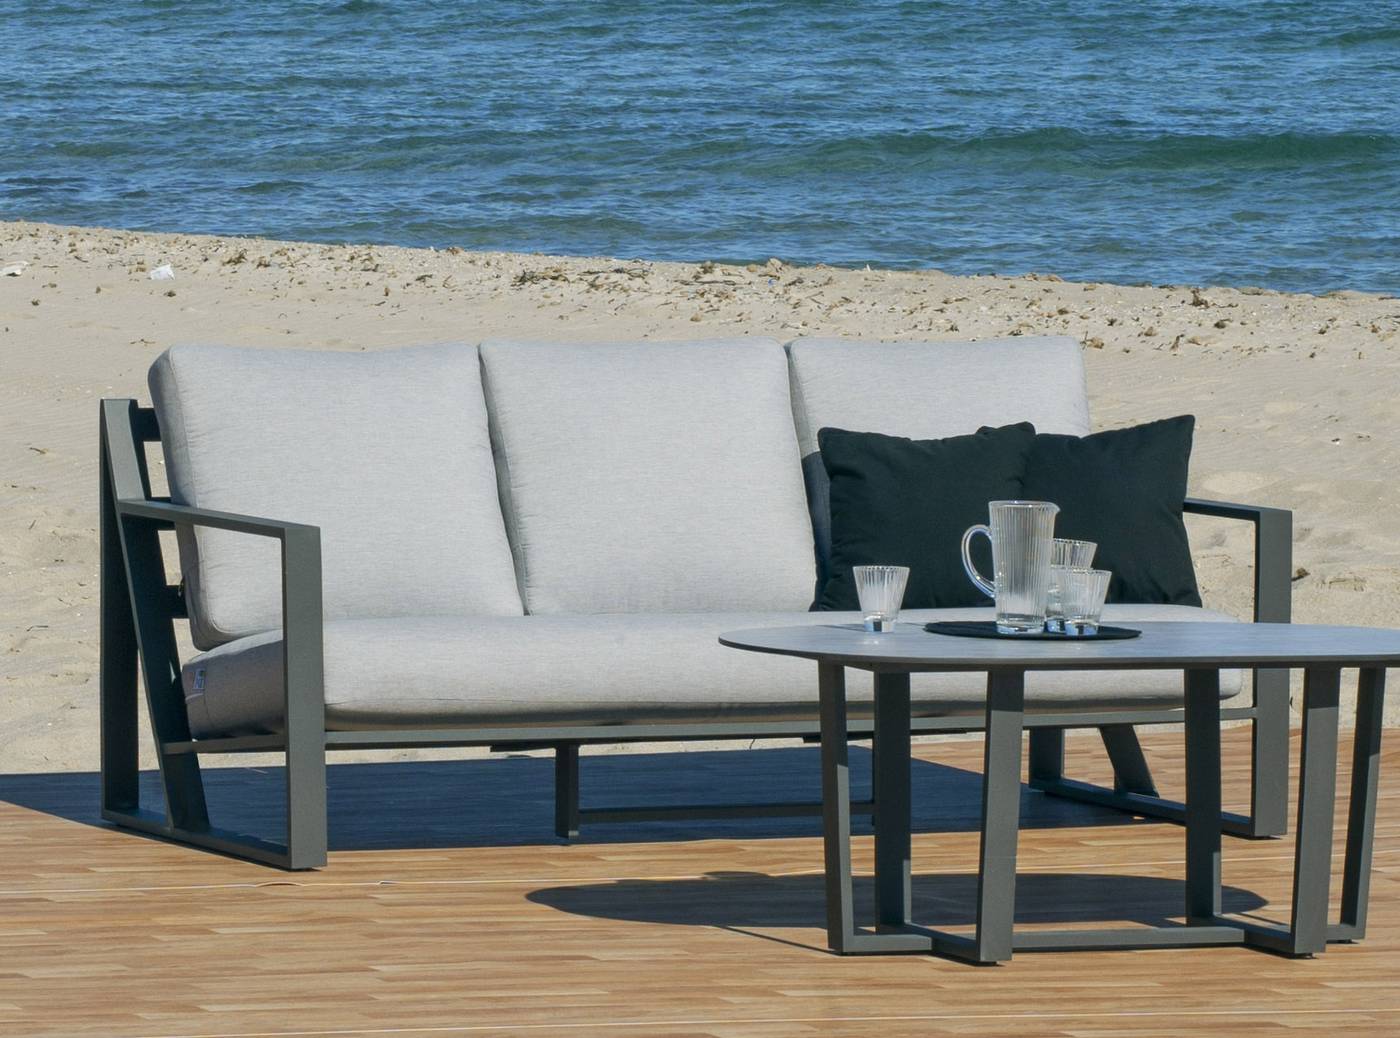 Lujoso sofá 3 plazas de alumnio, con cojines gran confort desenfundables. Disponible en color blanco, antracita, champagne, plata o marrón.